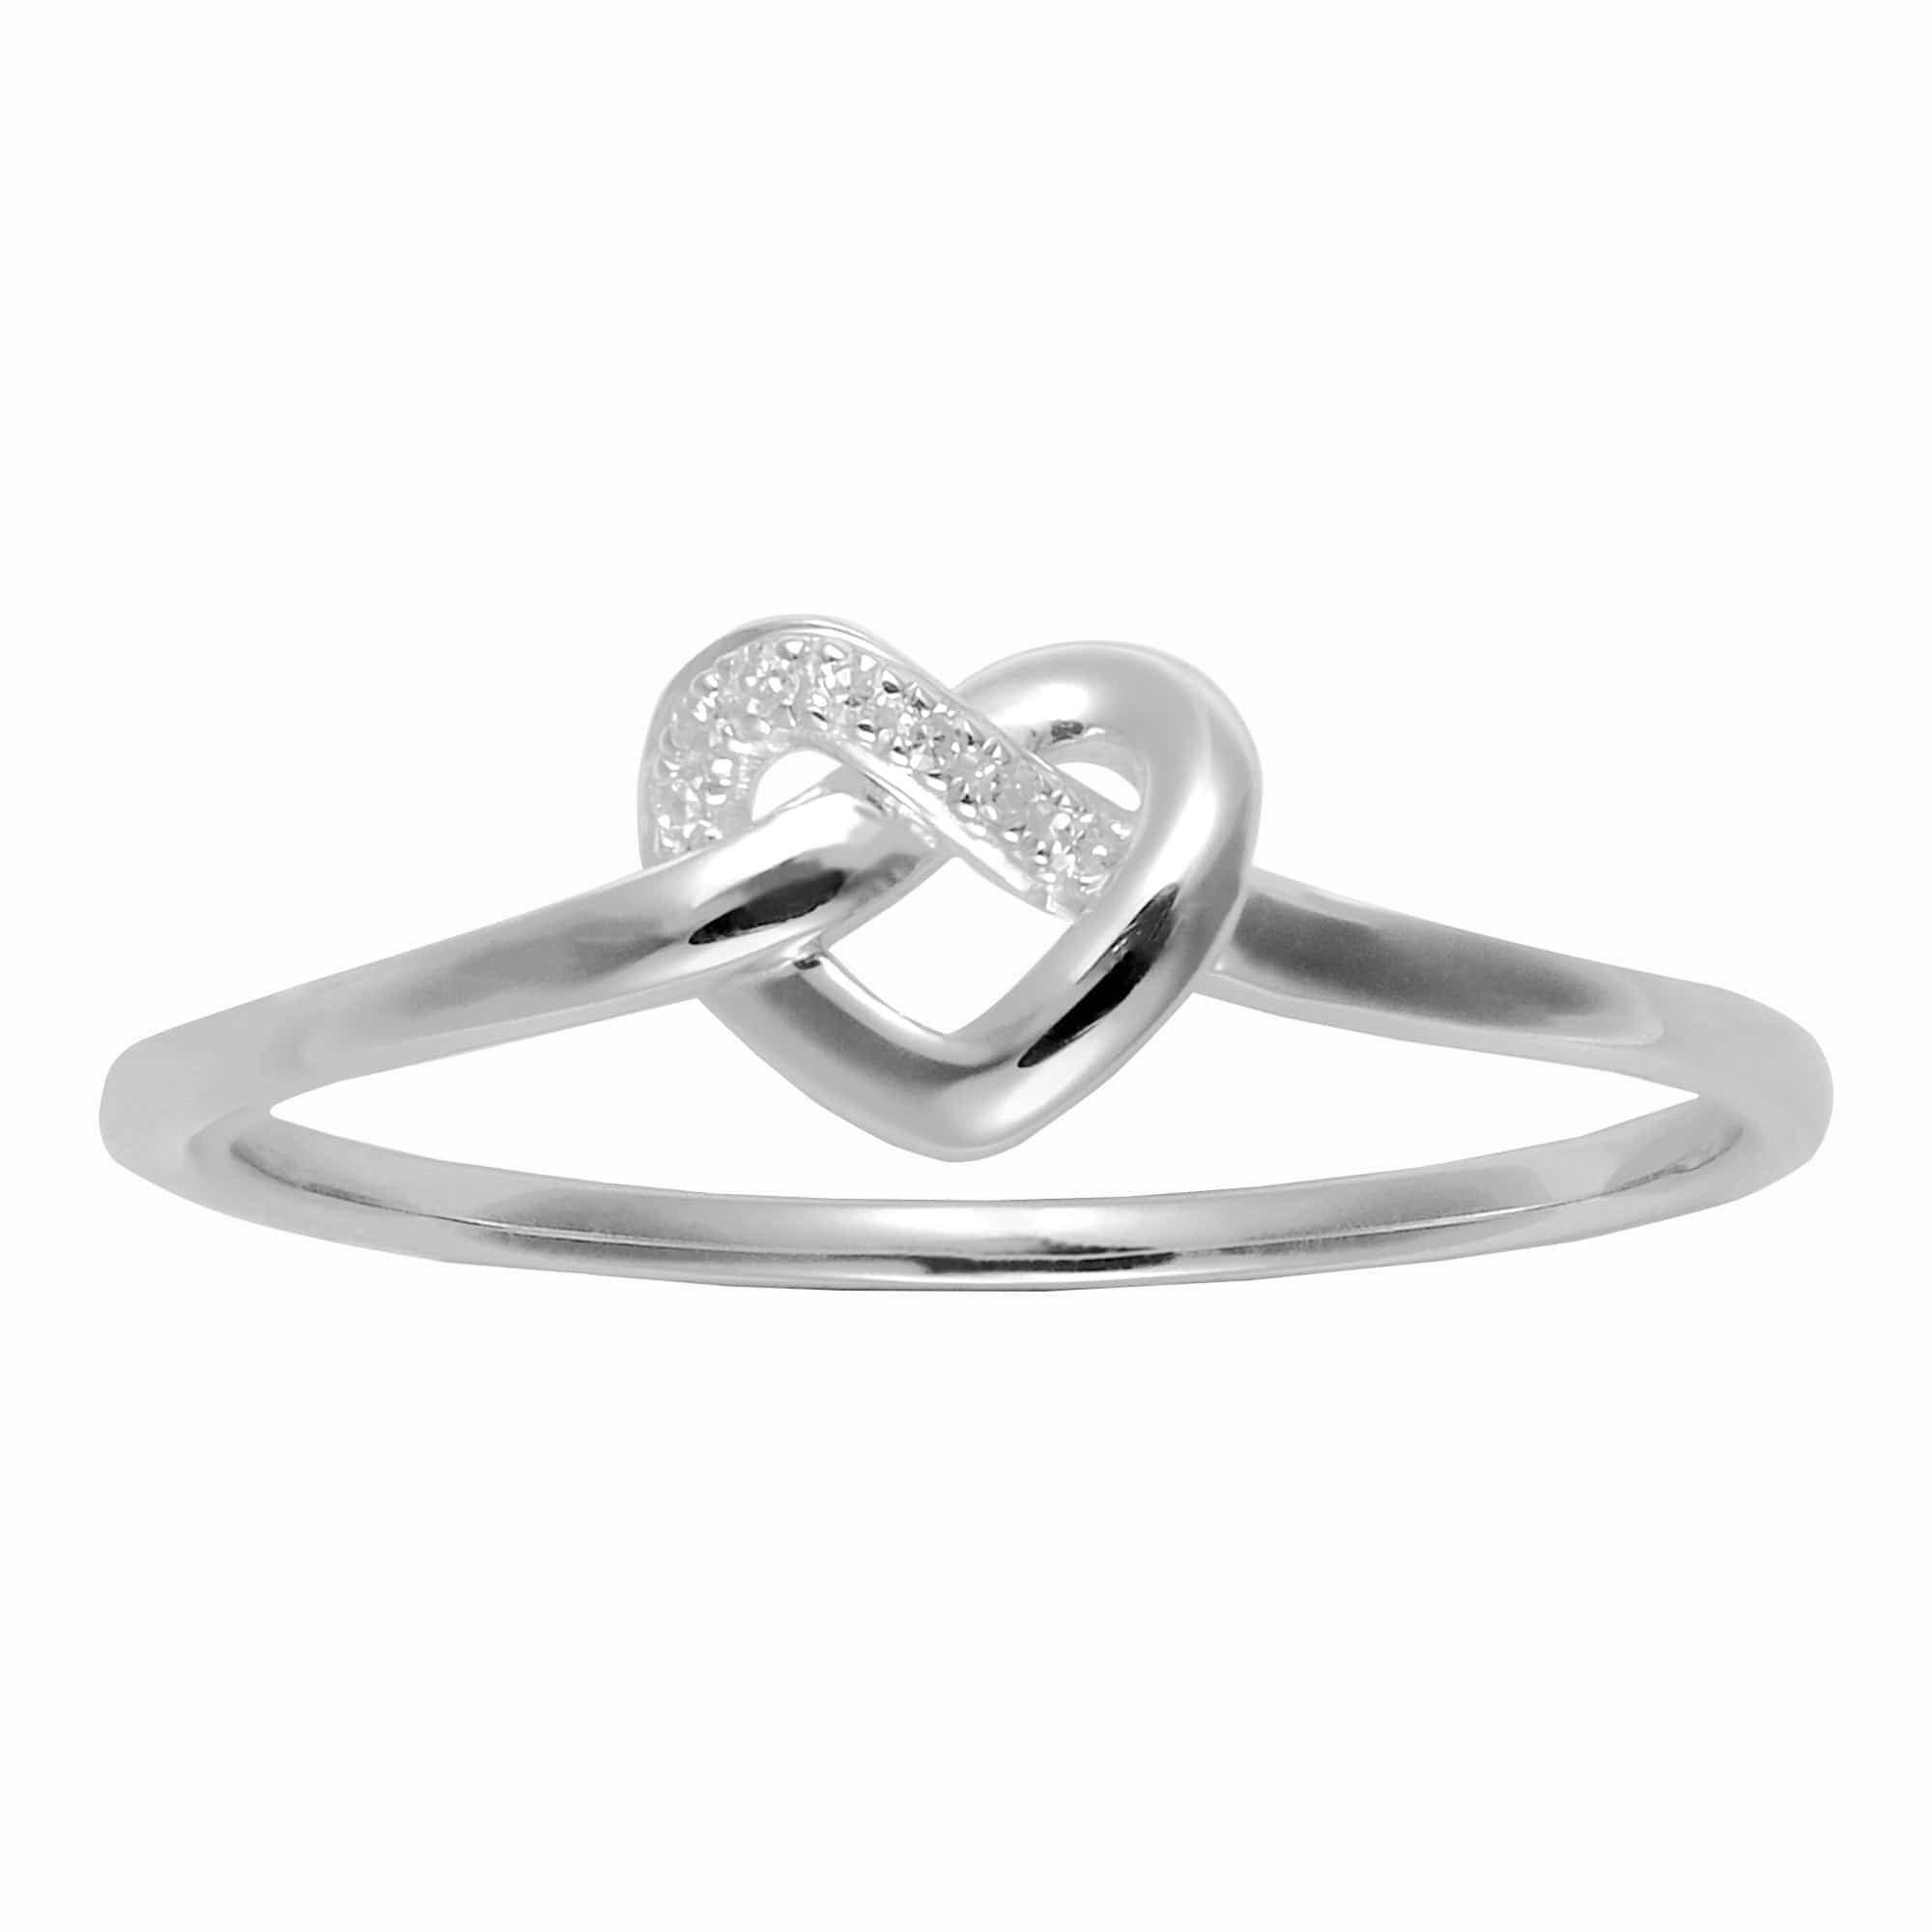 Classic Round Diamond Heart Knot Ring in 9ct White Gold - Gemondo